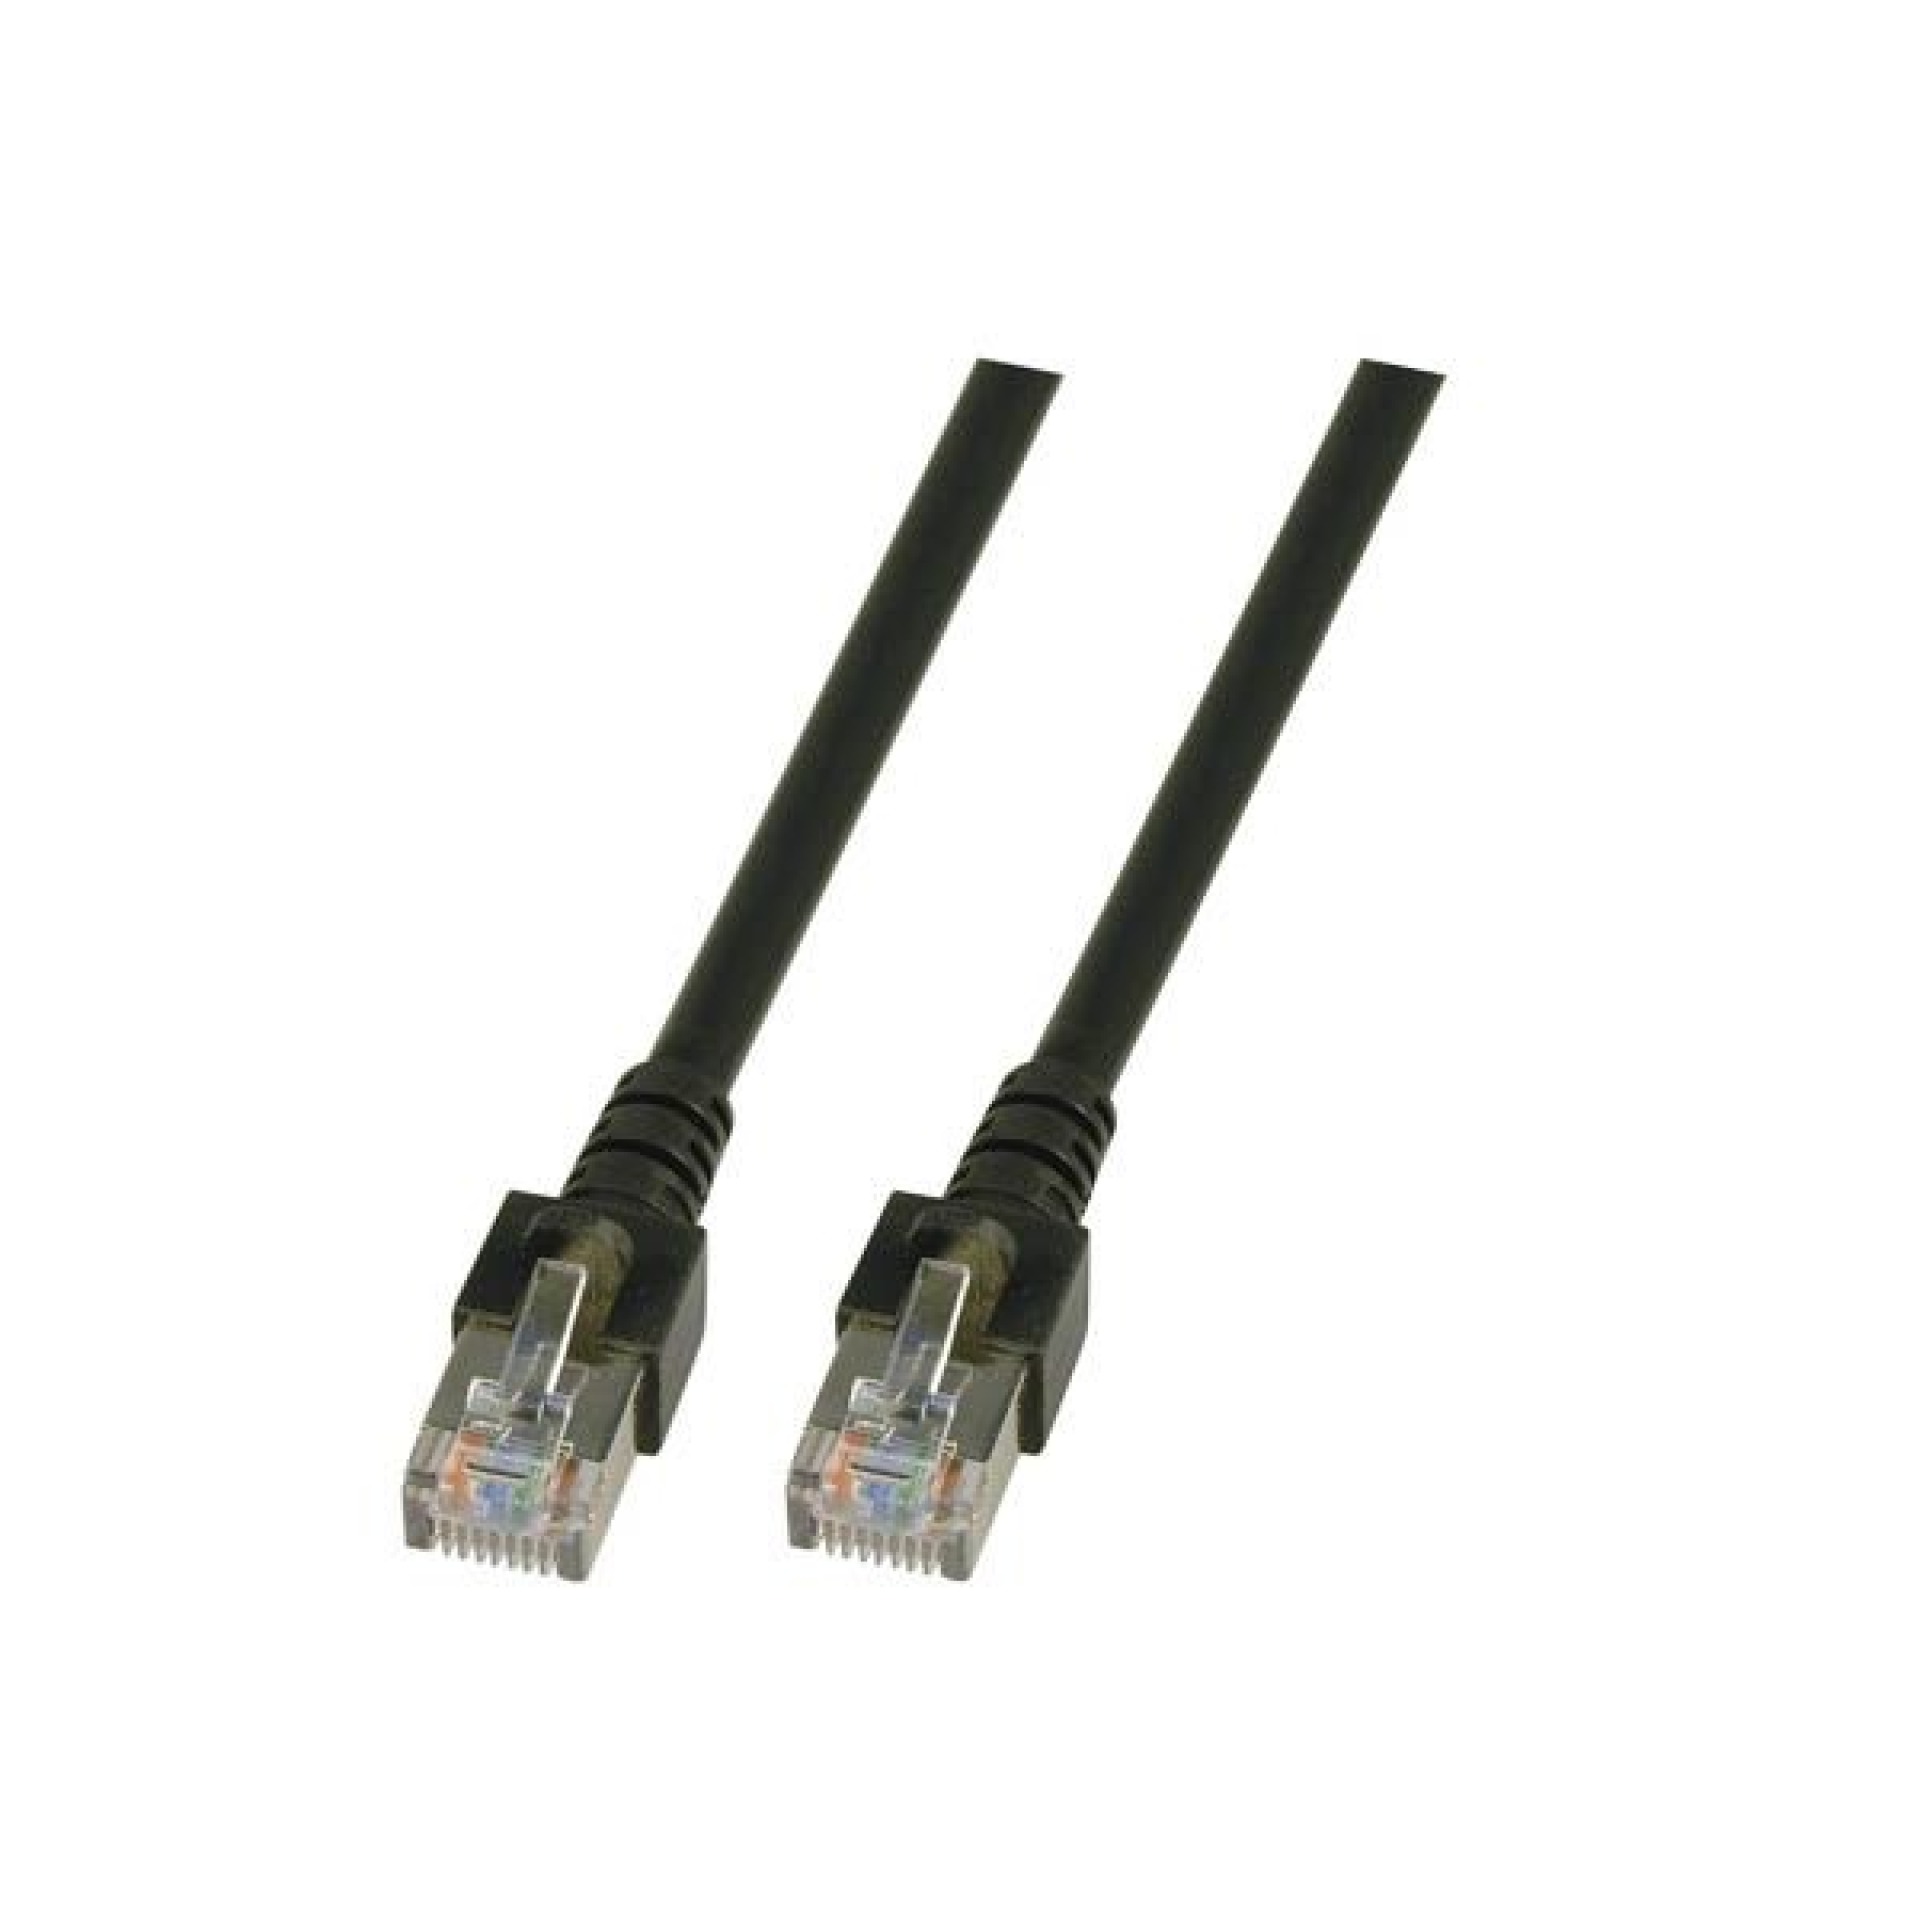 RJ45 Patch cable SF/UTP, Cat.5e, PVC, CCA, 1m, black